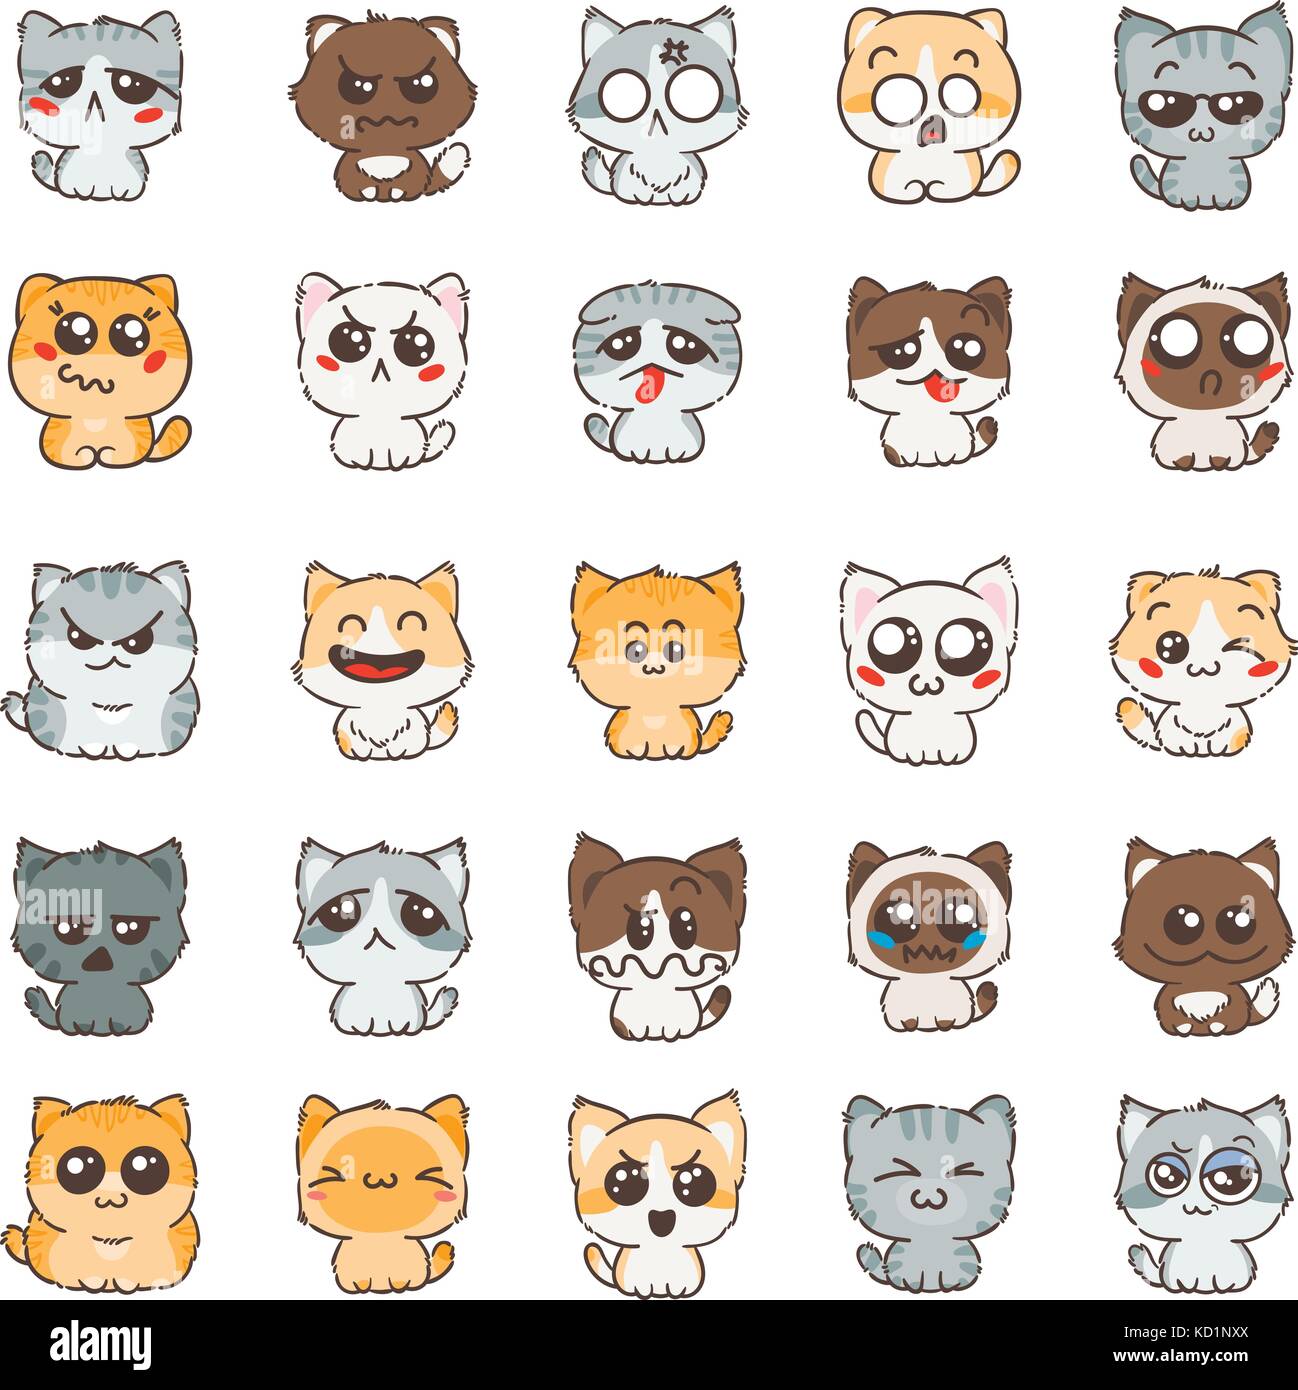 Cute Dibujos Animados Gatos Y Perros Con Diferentes Emociones